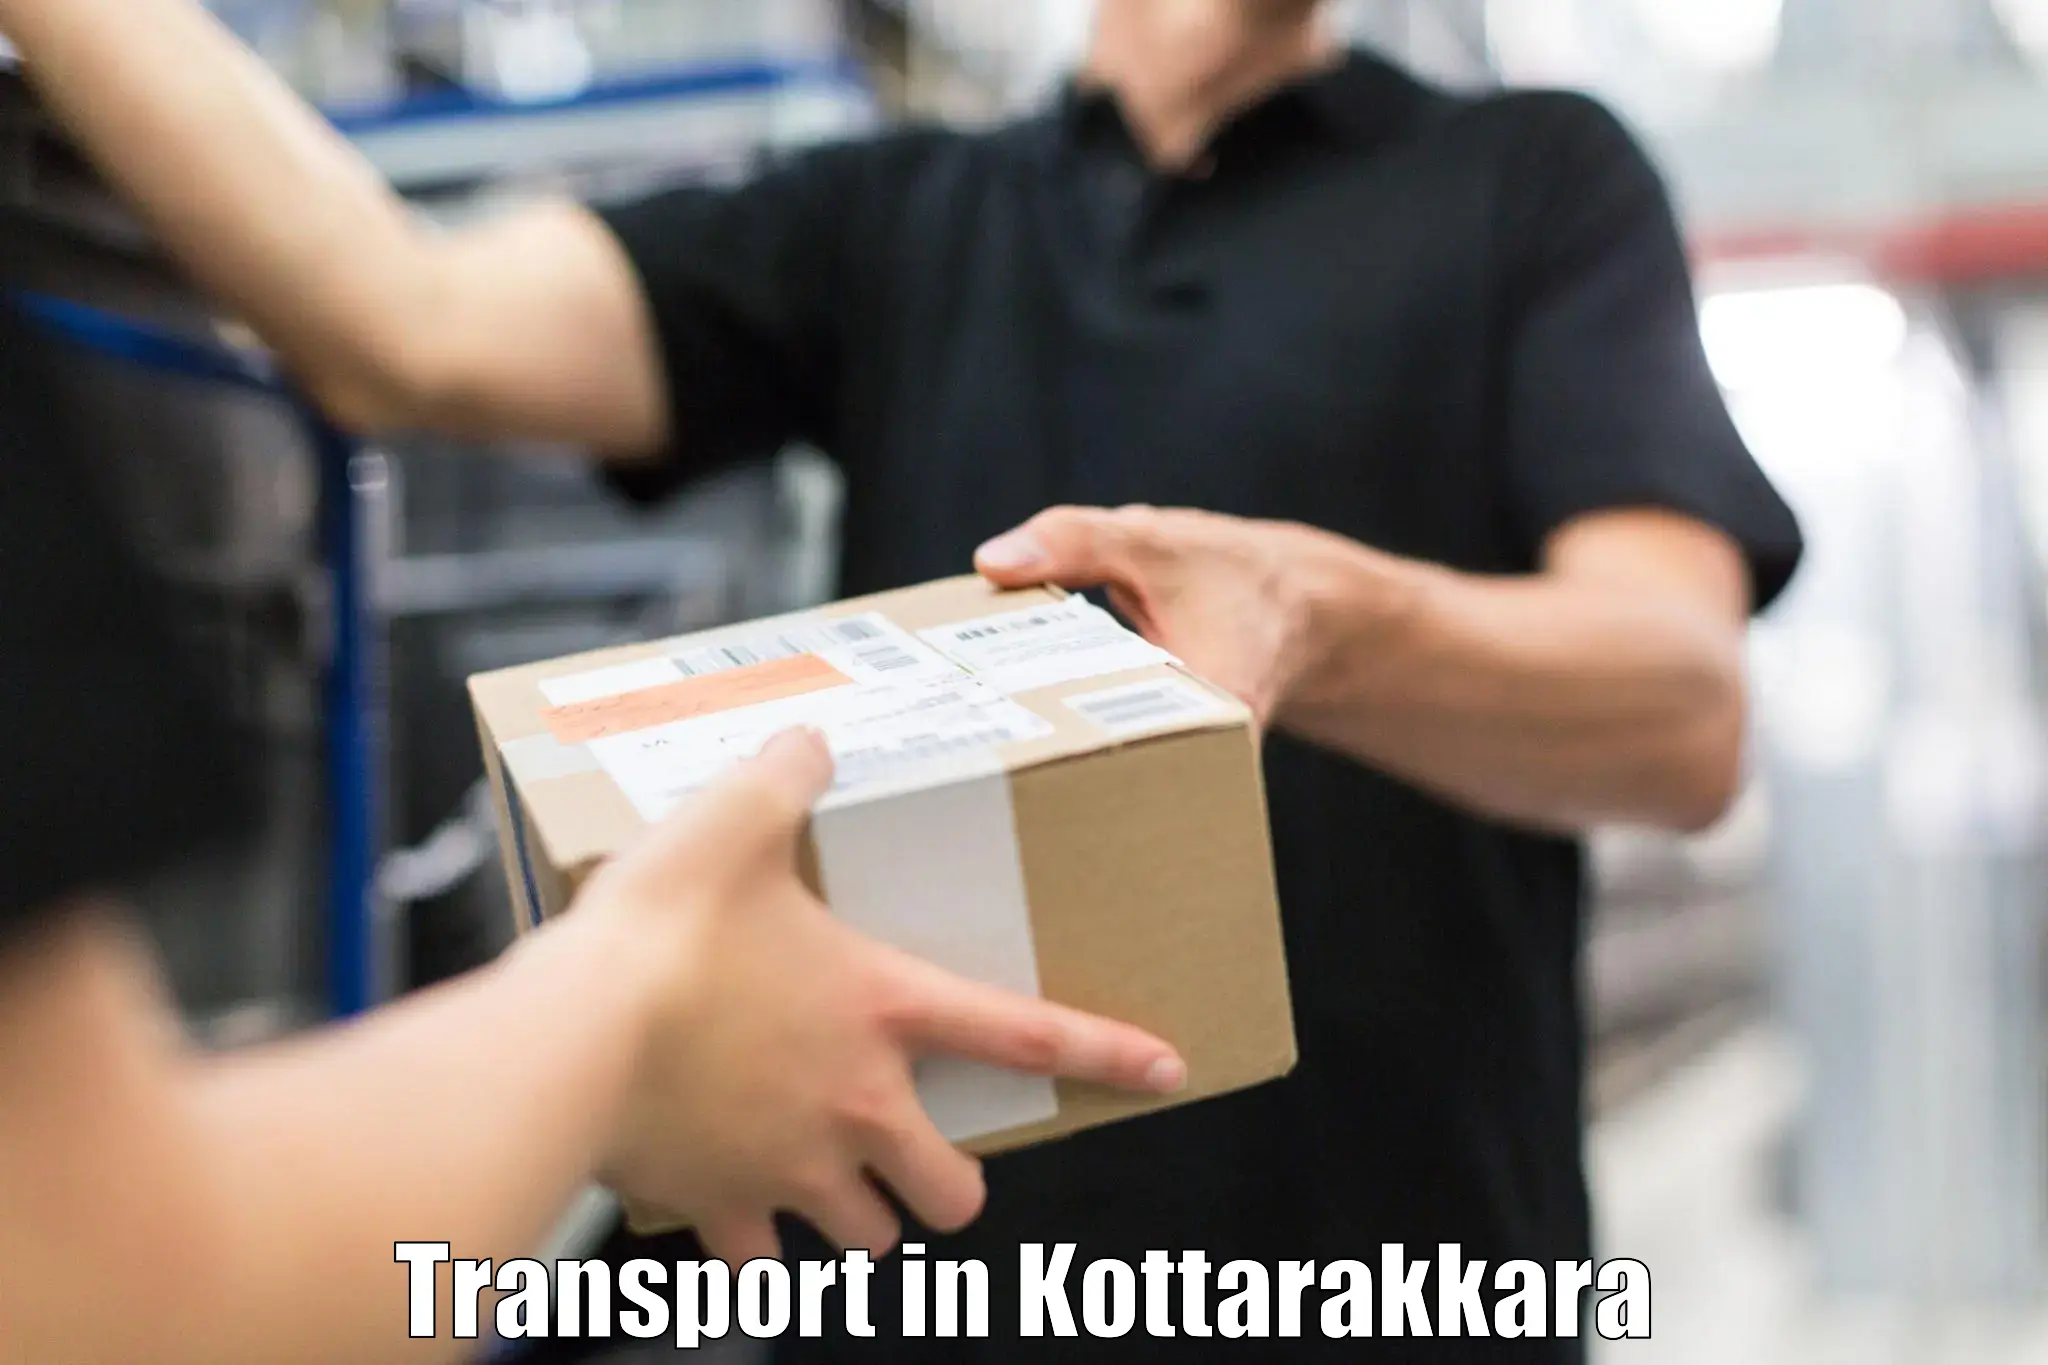 Road transport services in Kottarakkara